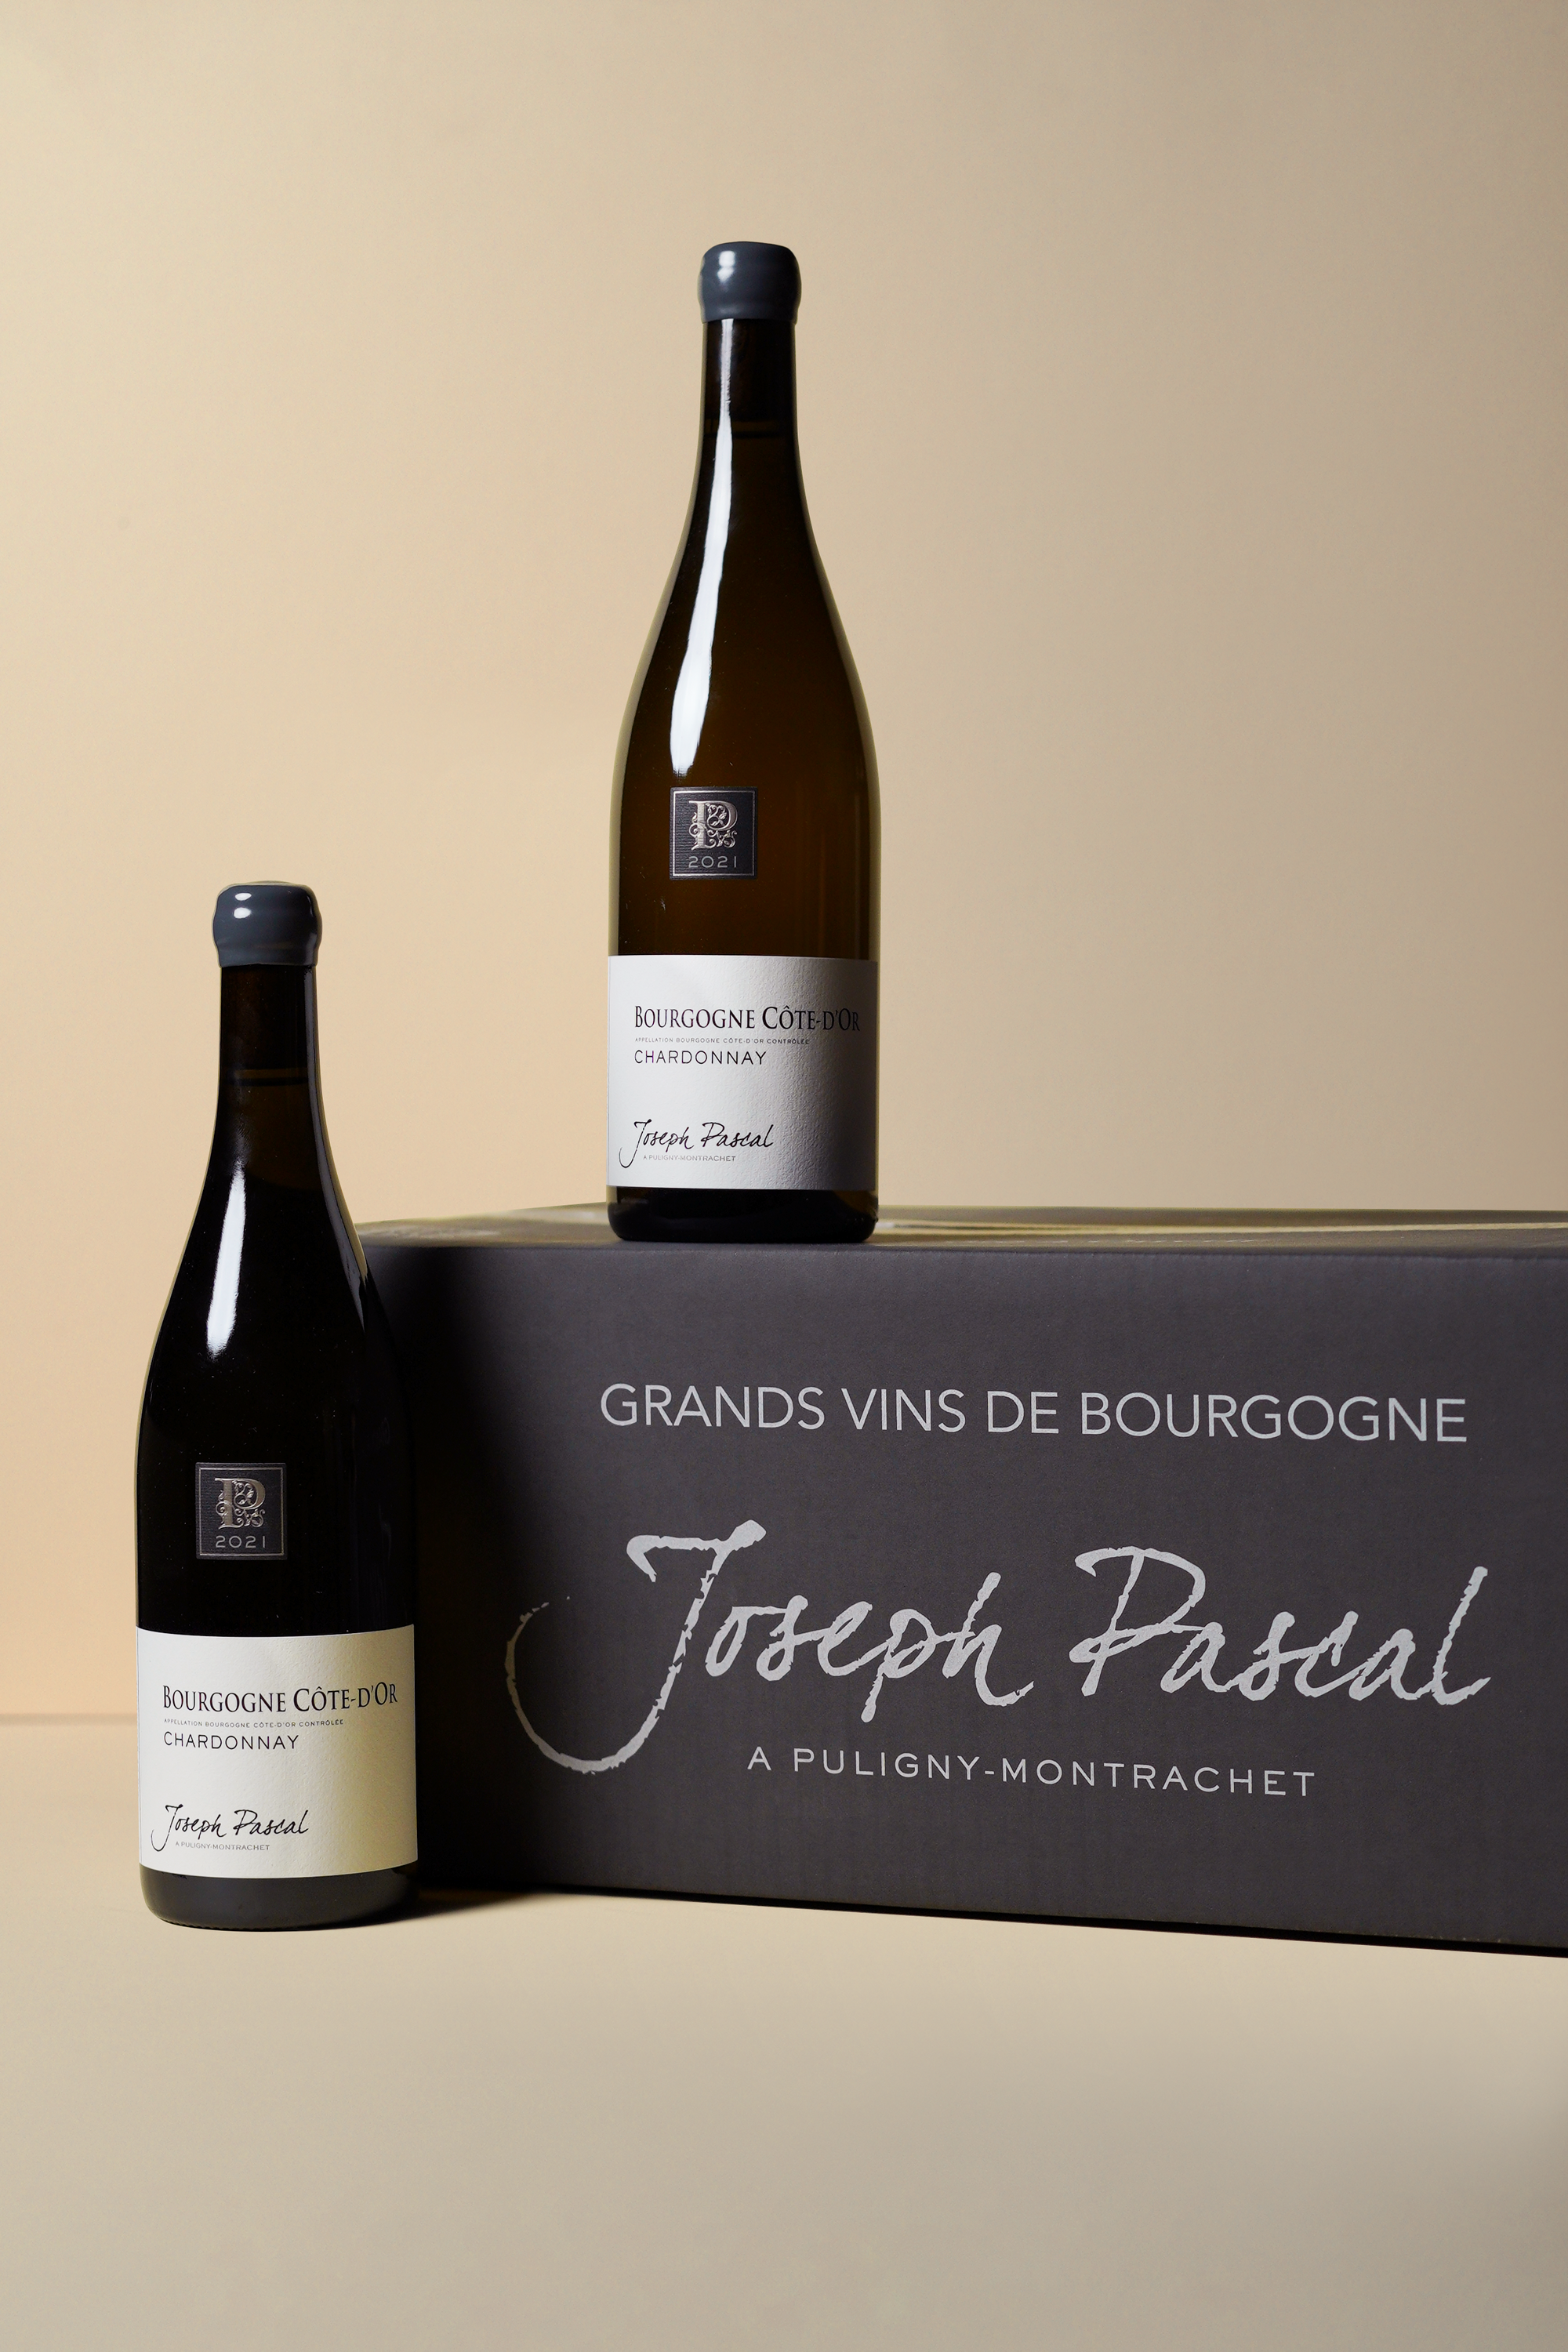 Joseph Pascal, Bourgogne Cote d'Or Chardonnay 2021 (OCC of 12 bottles)